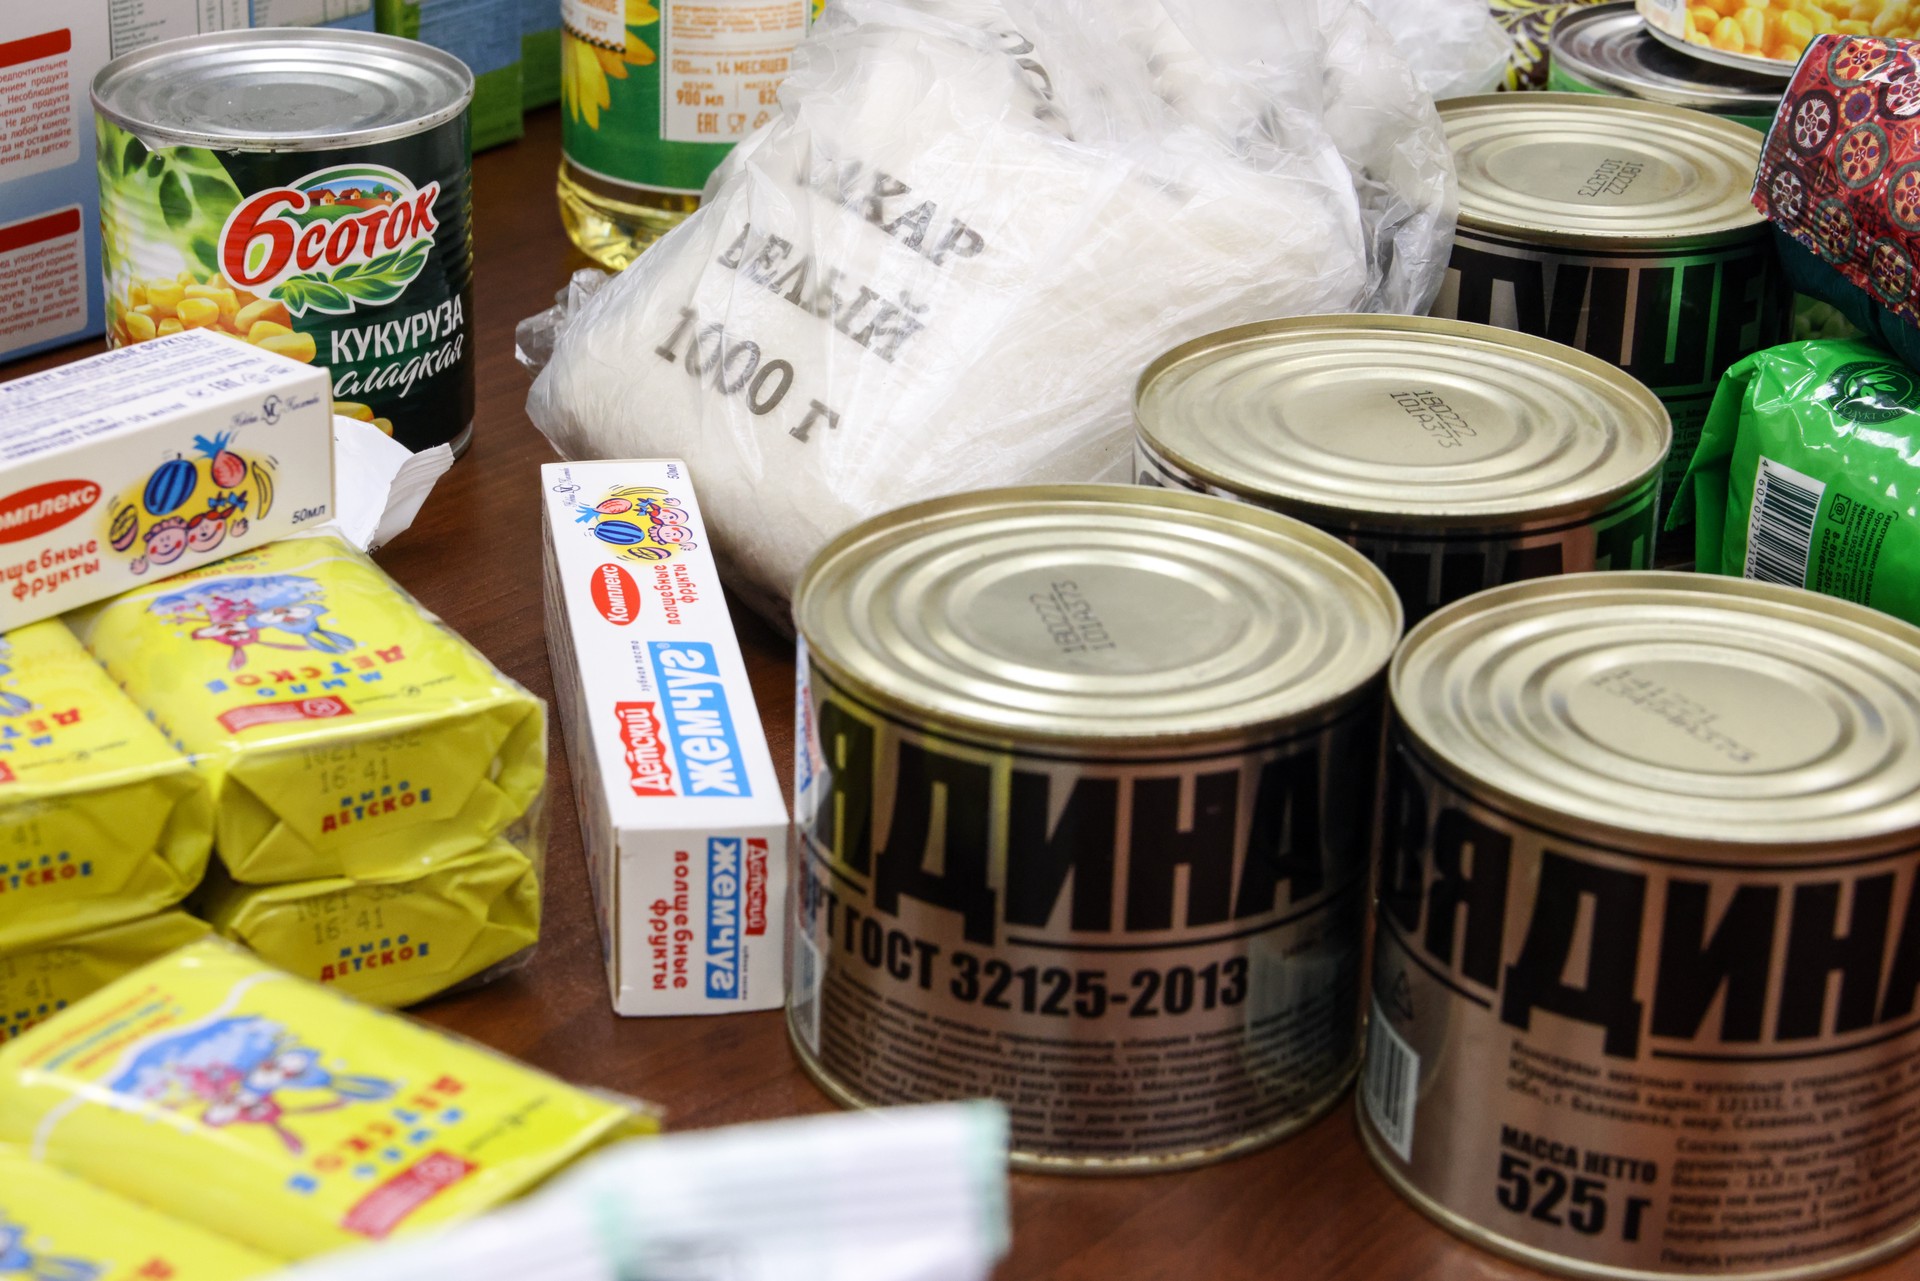 Члены РДК* планировали отправить отравленные продукты добровольцам «Эспаньолы»